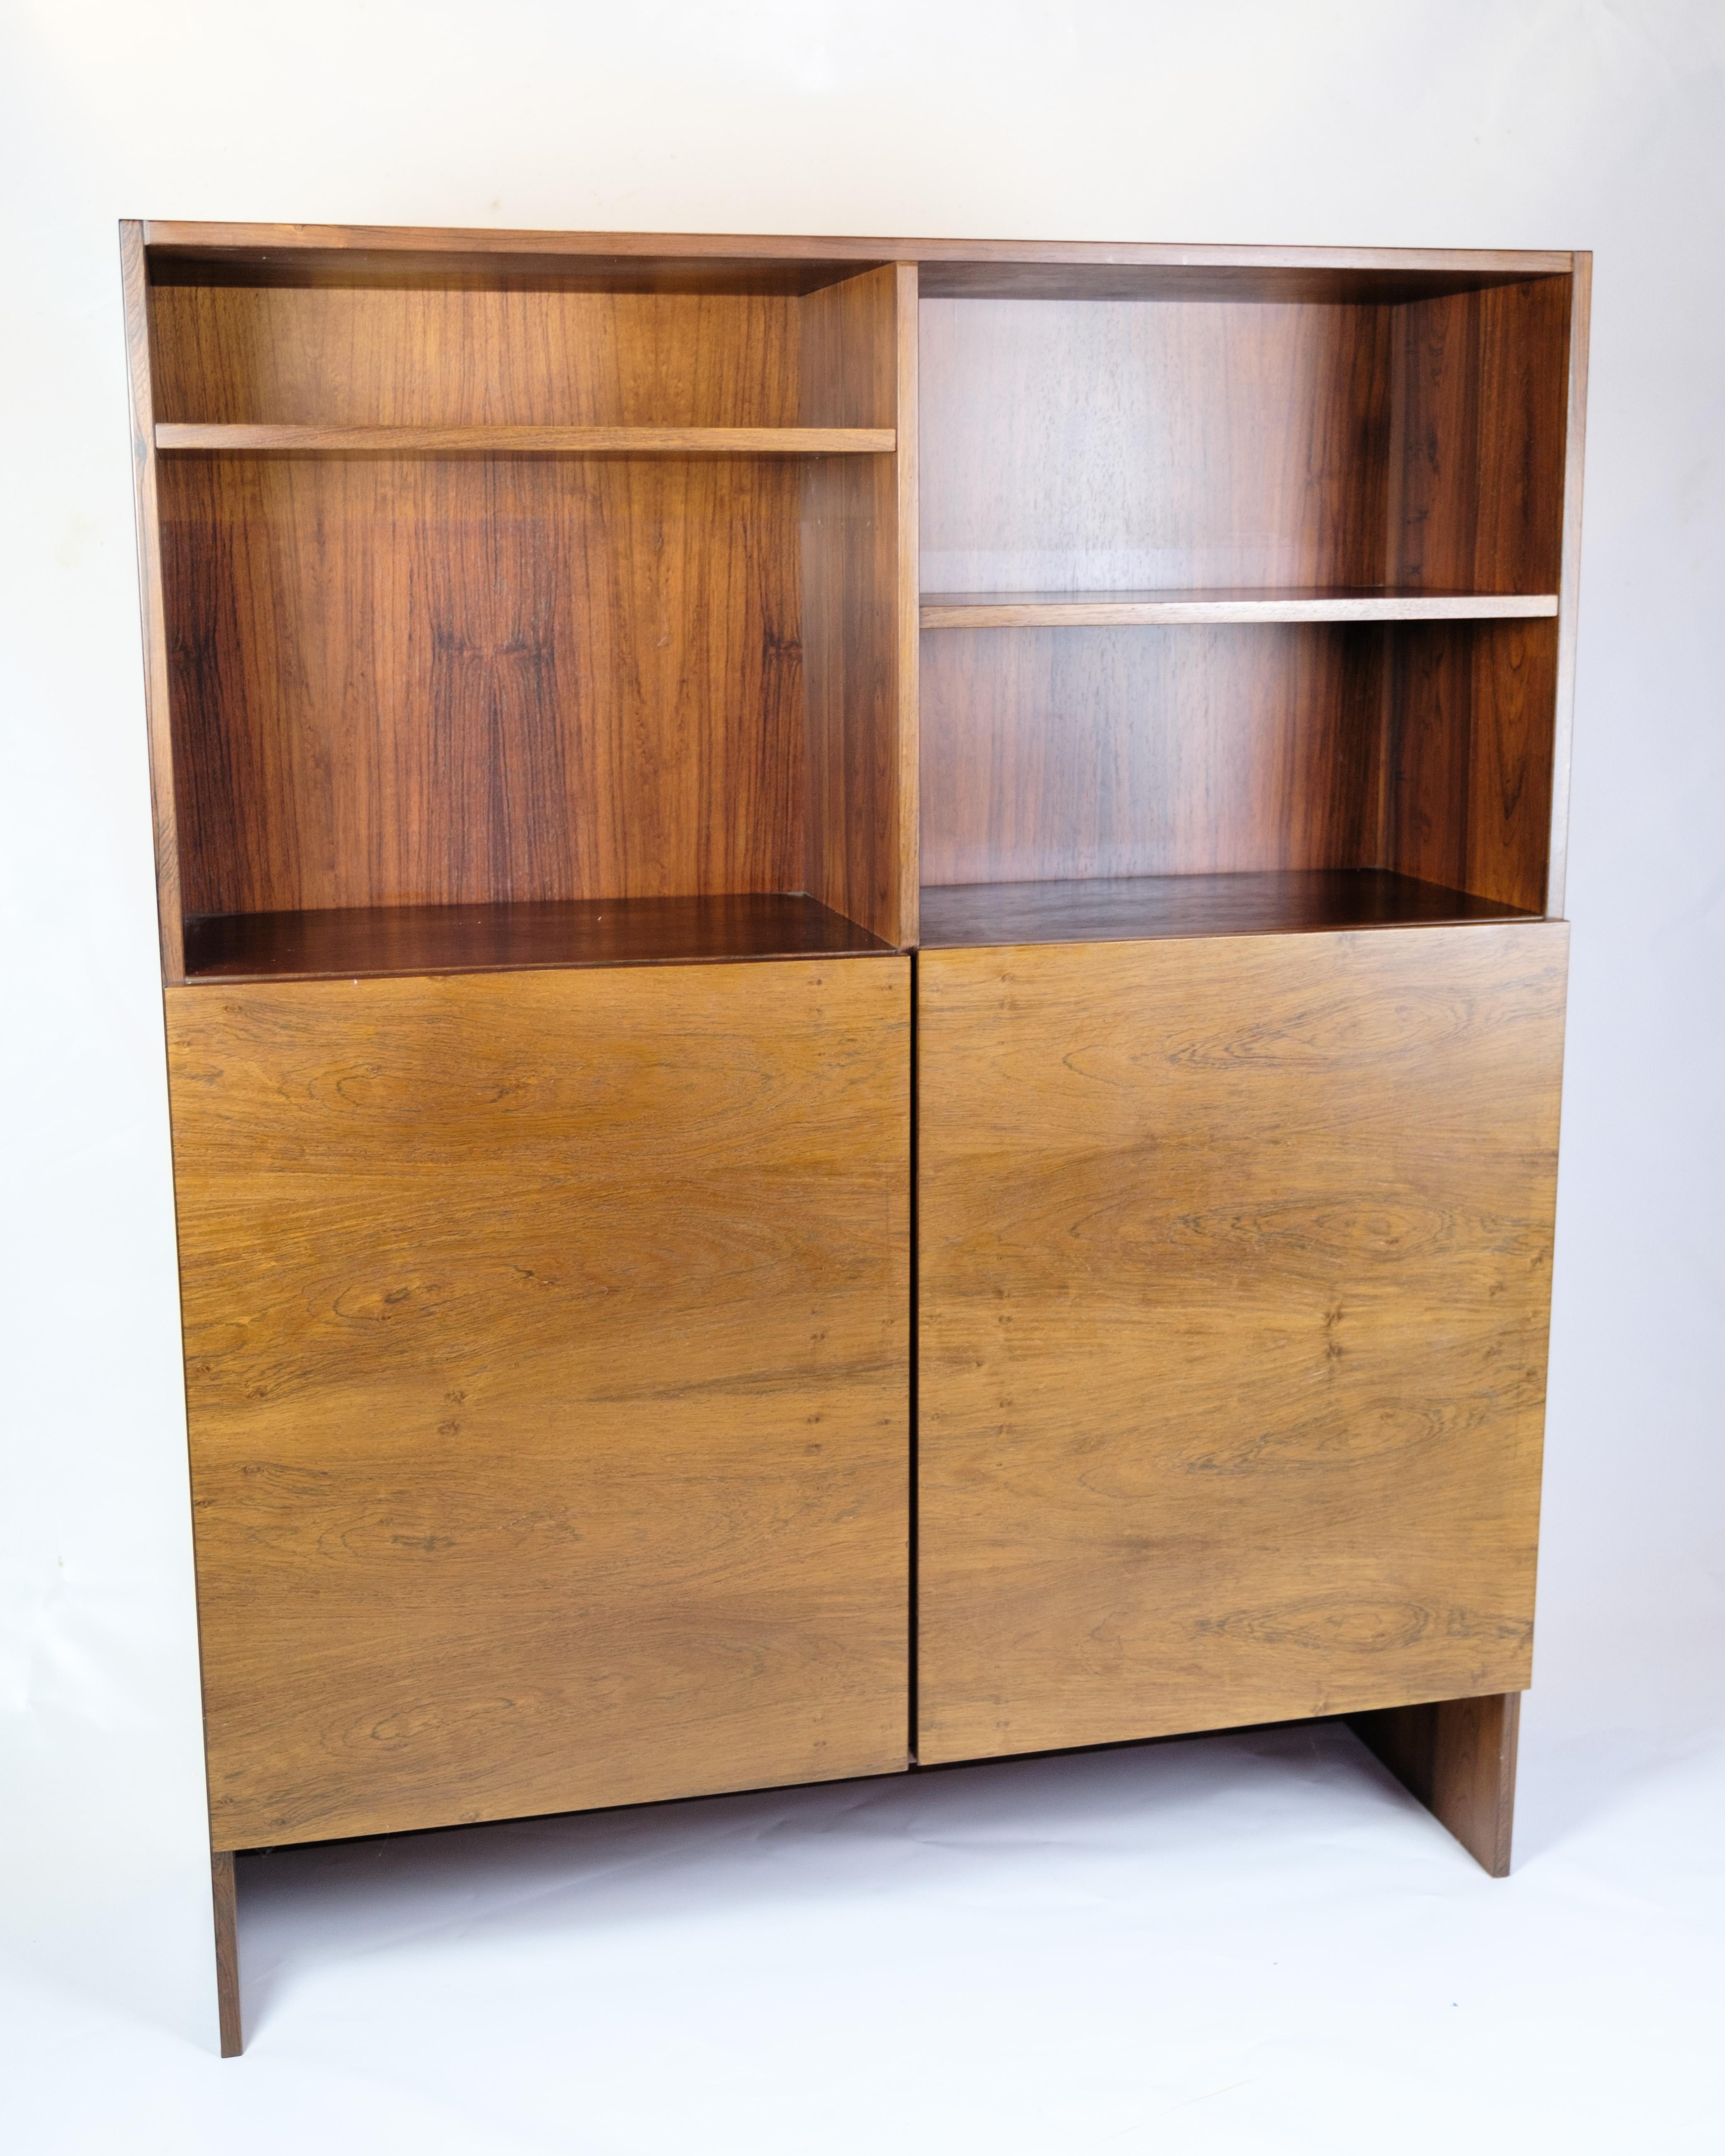 Dieses Bücherregal ist ein fantastisches Beispiel für dänisches Design aus den 1960er Jahren. Er ist aus Palisanderholz gefertigt und strahlt eine zeitlose Eleganz und Schlichtheit aus, die für die skandinavische Designtradition charakteristisch